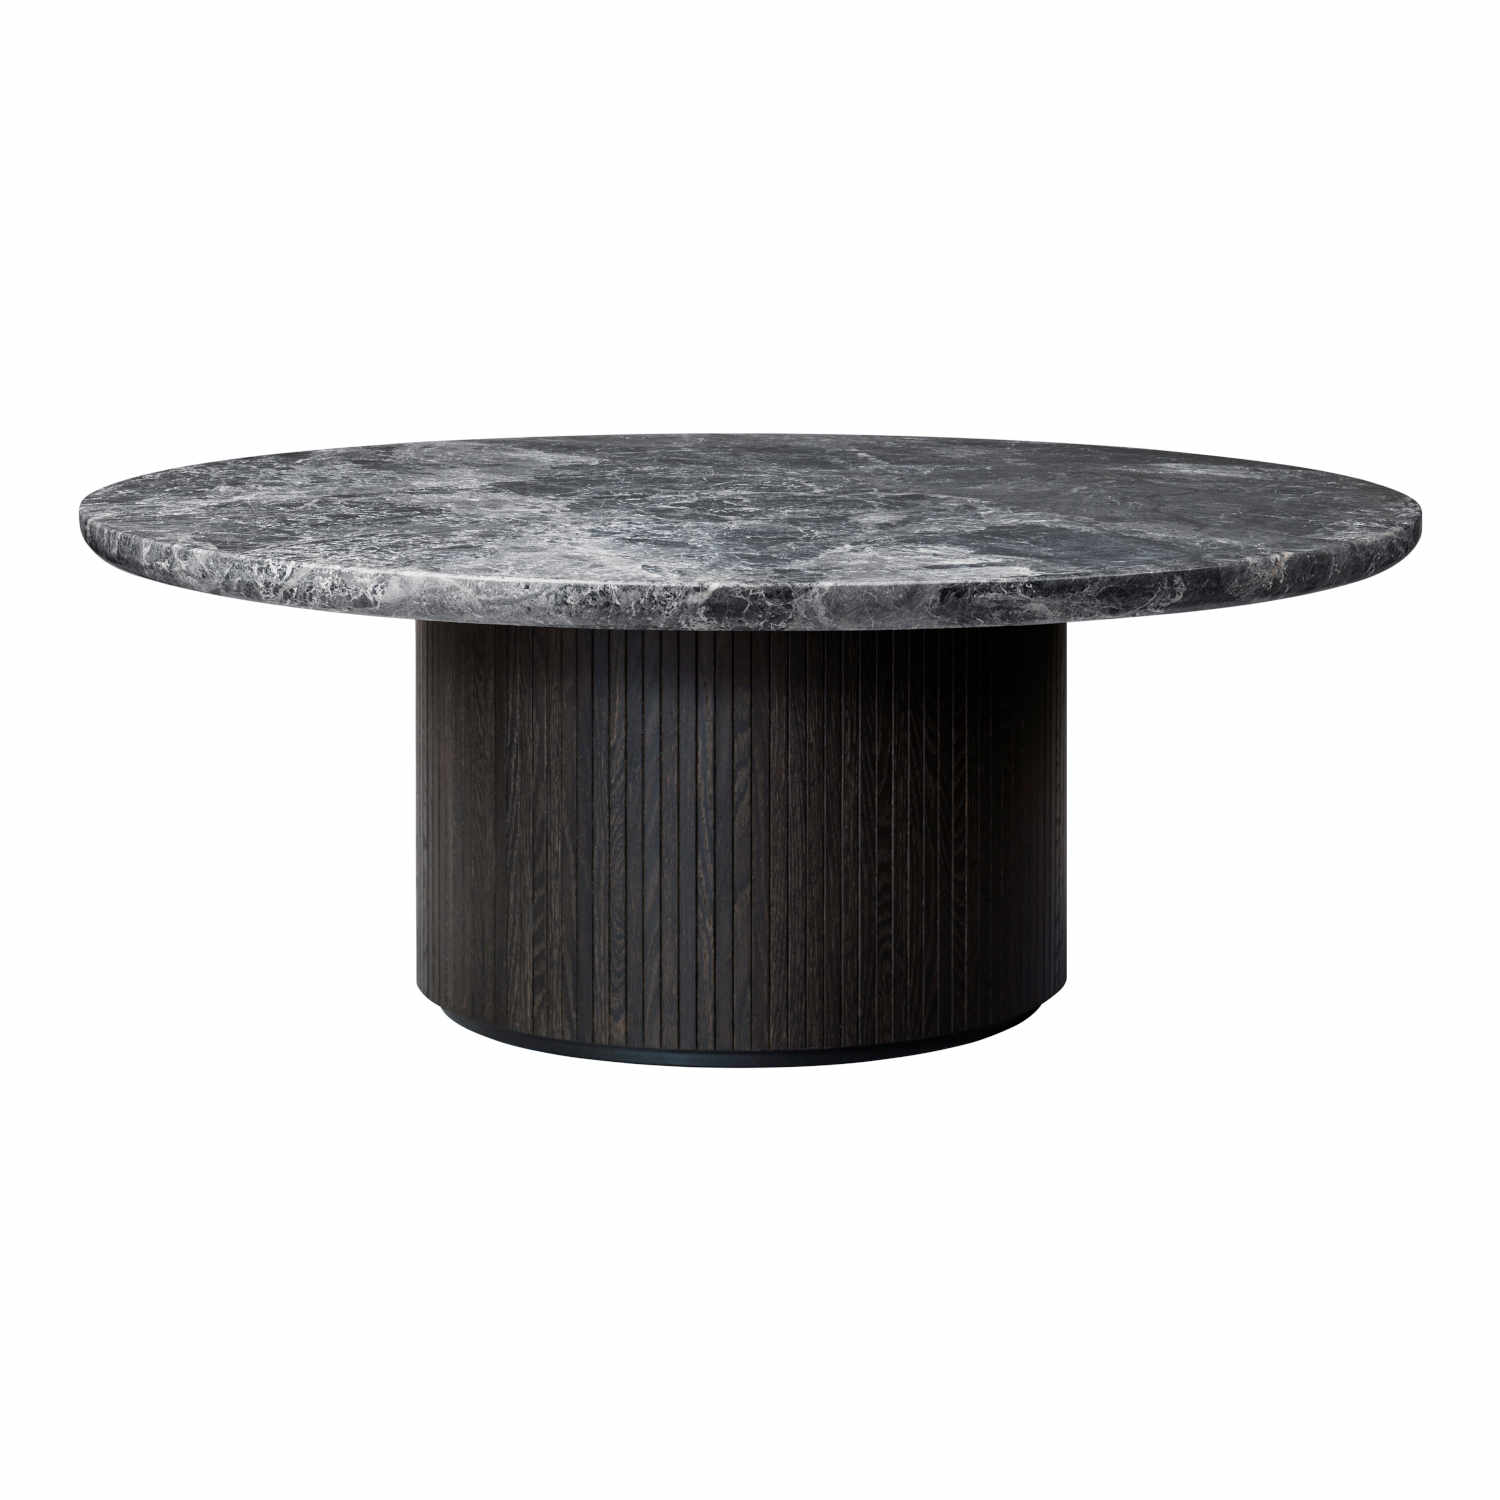 Moon Coffee Table Beistelltisch, Grösse ø 120 cm, Ausführung holz, stained veneer oak (braun/schwarz lackiert) von GUBI